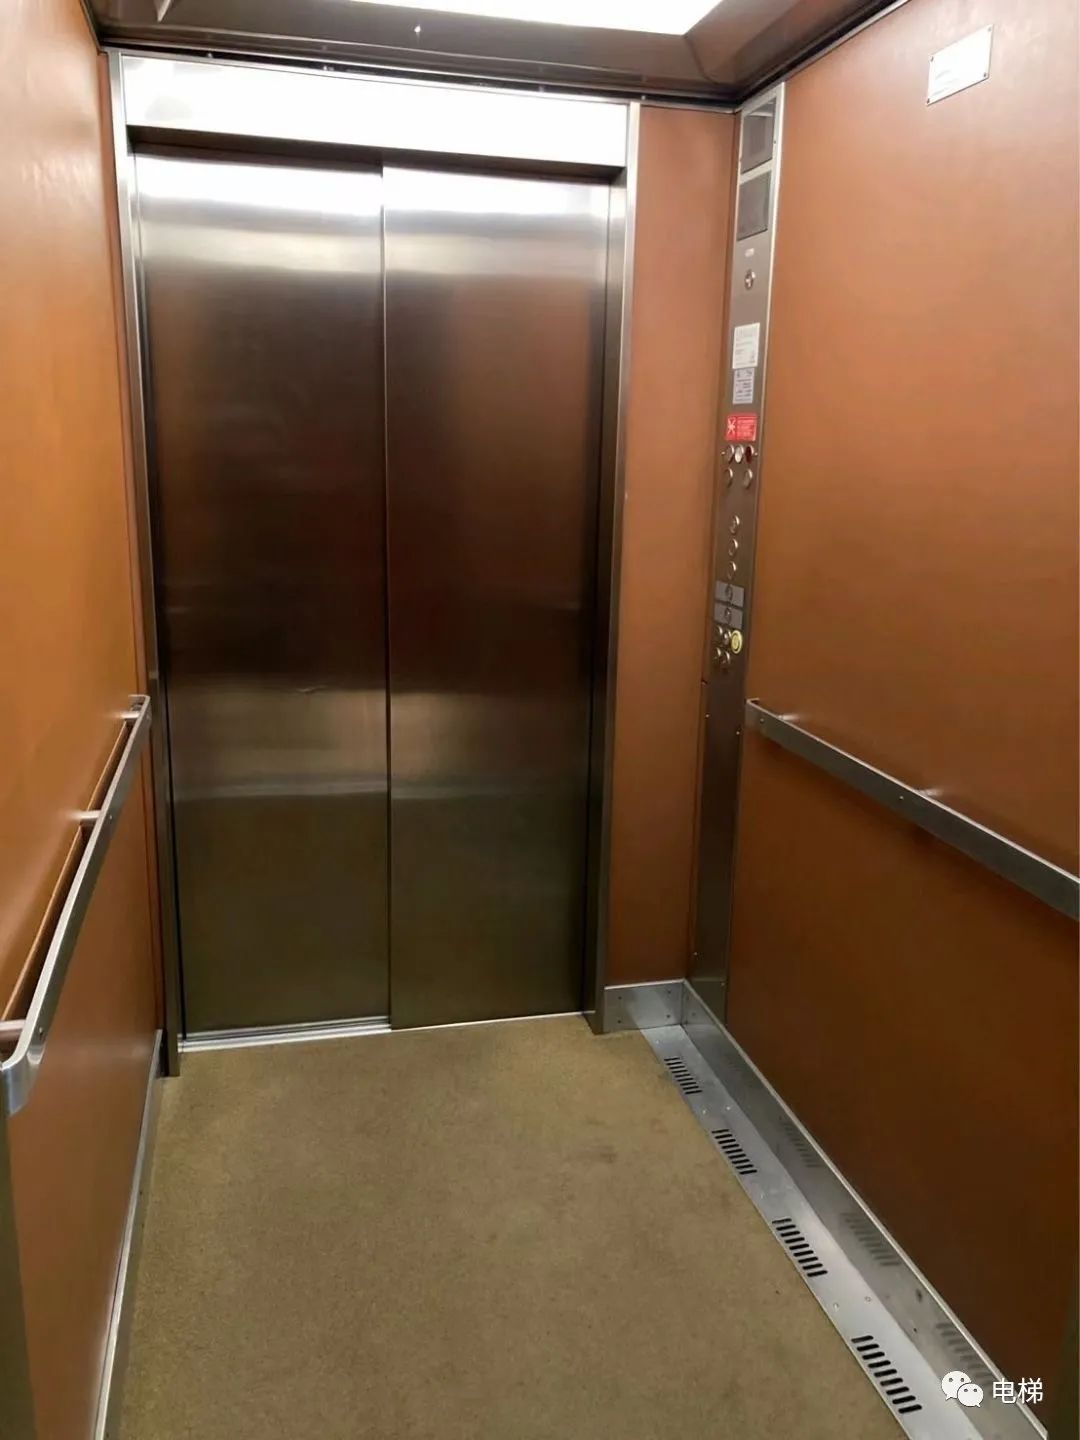 实拍罕见的迅达电梯